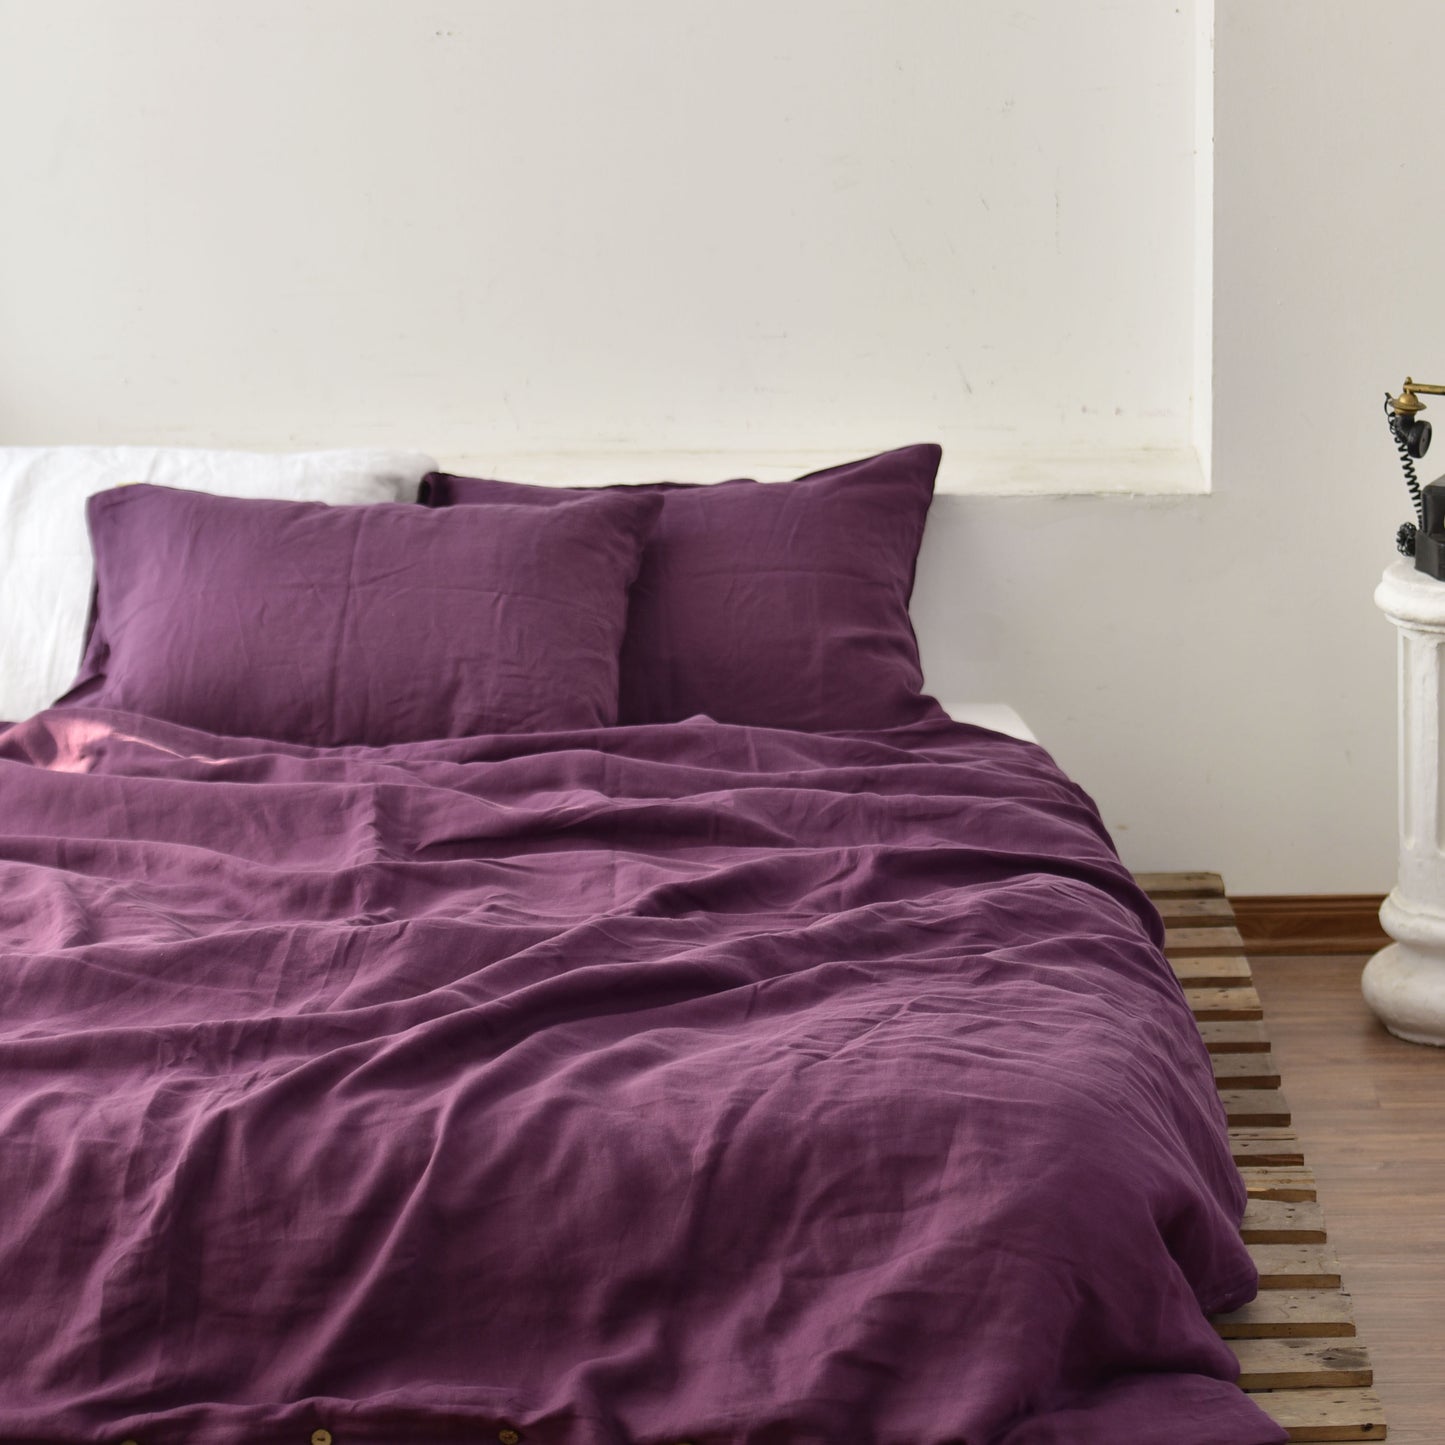 Violet French Linen Duvet Cover+2 Pillowcases Set- Plain Dyeing 16